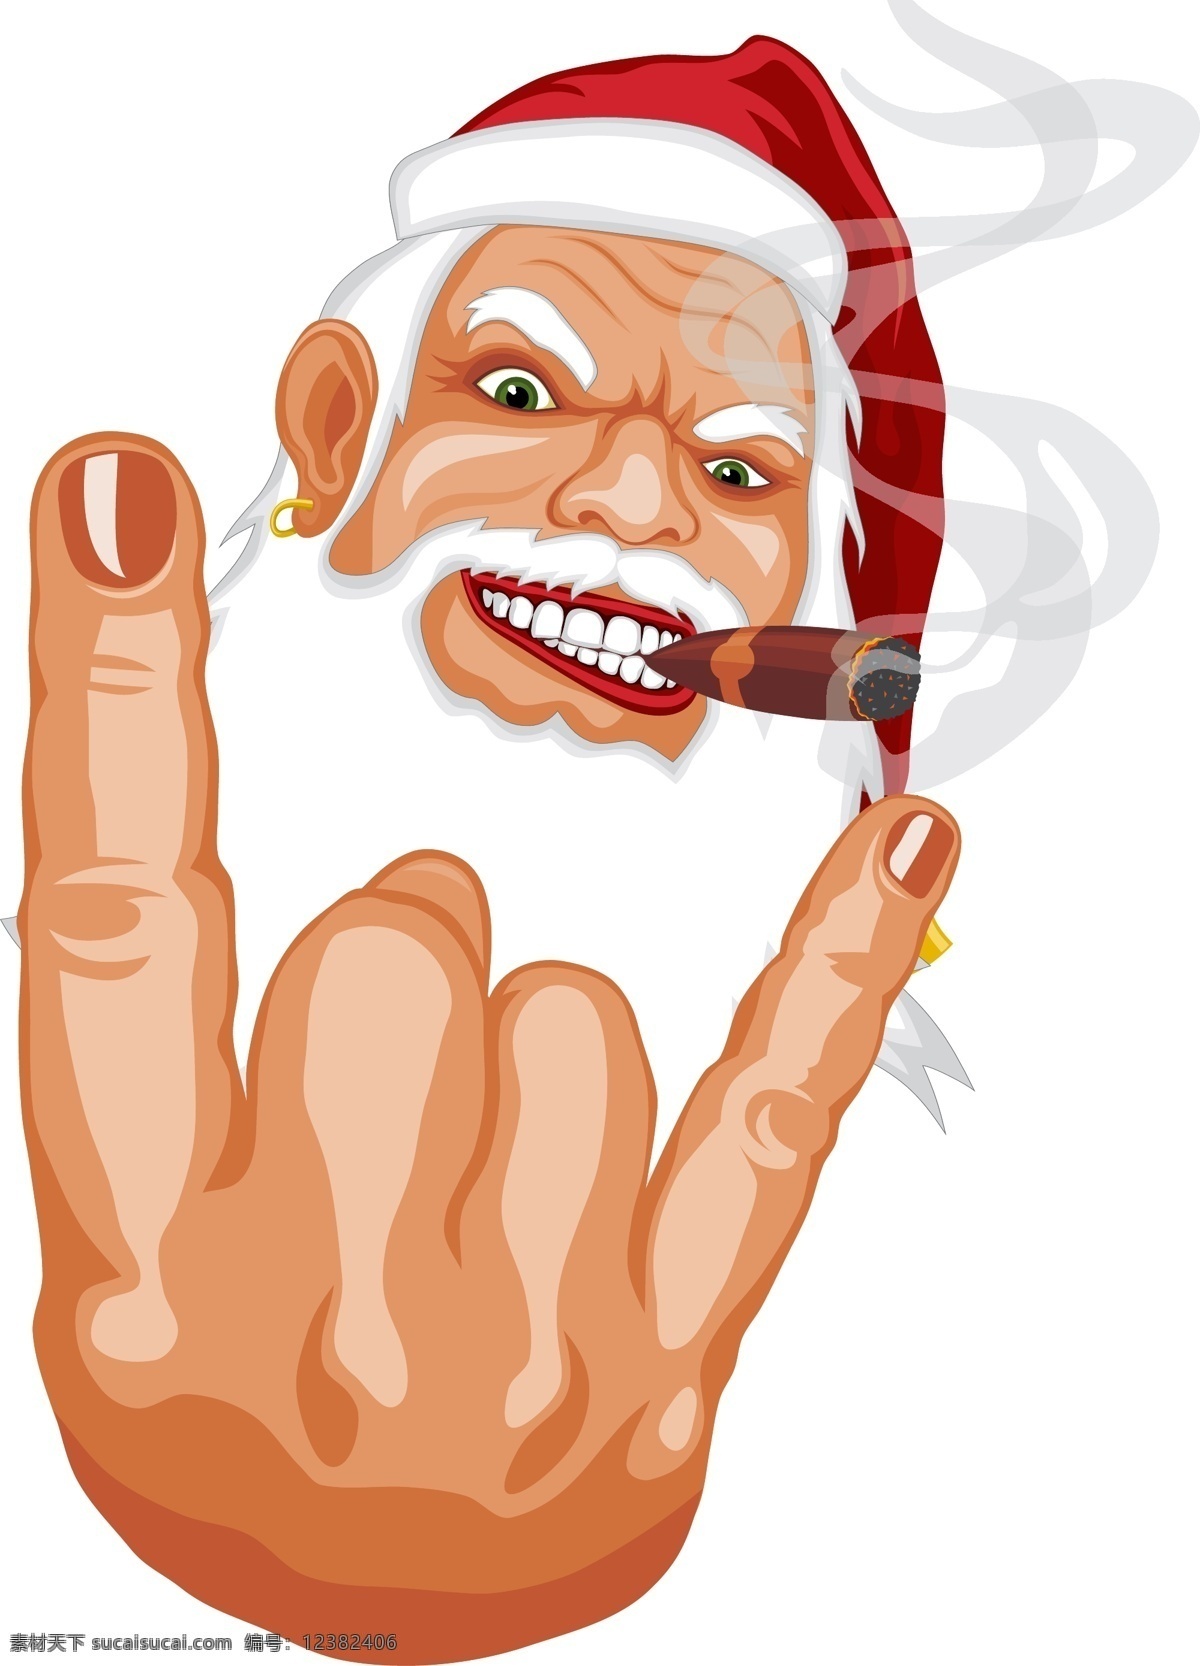 另类圣诞老人 圣诞 老人 另类 怪异 荒诞 鄙视 挑衅 白胡子 烟 手指 非主流 节日素材 圣诞节 矢量图库